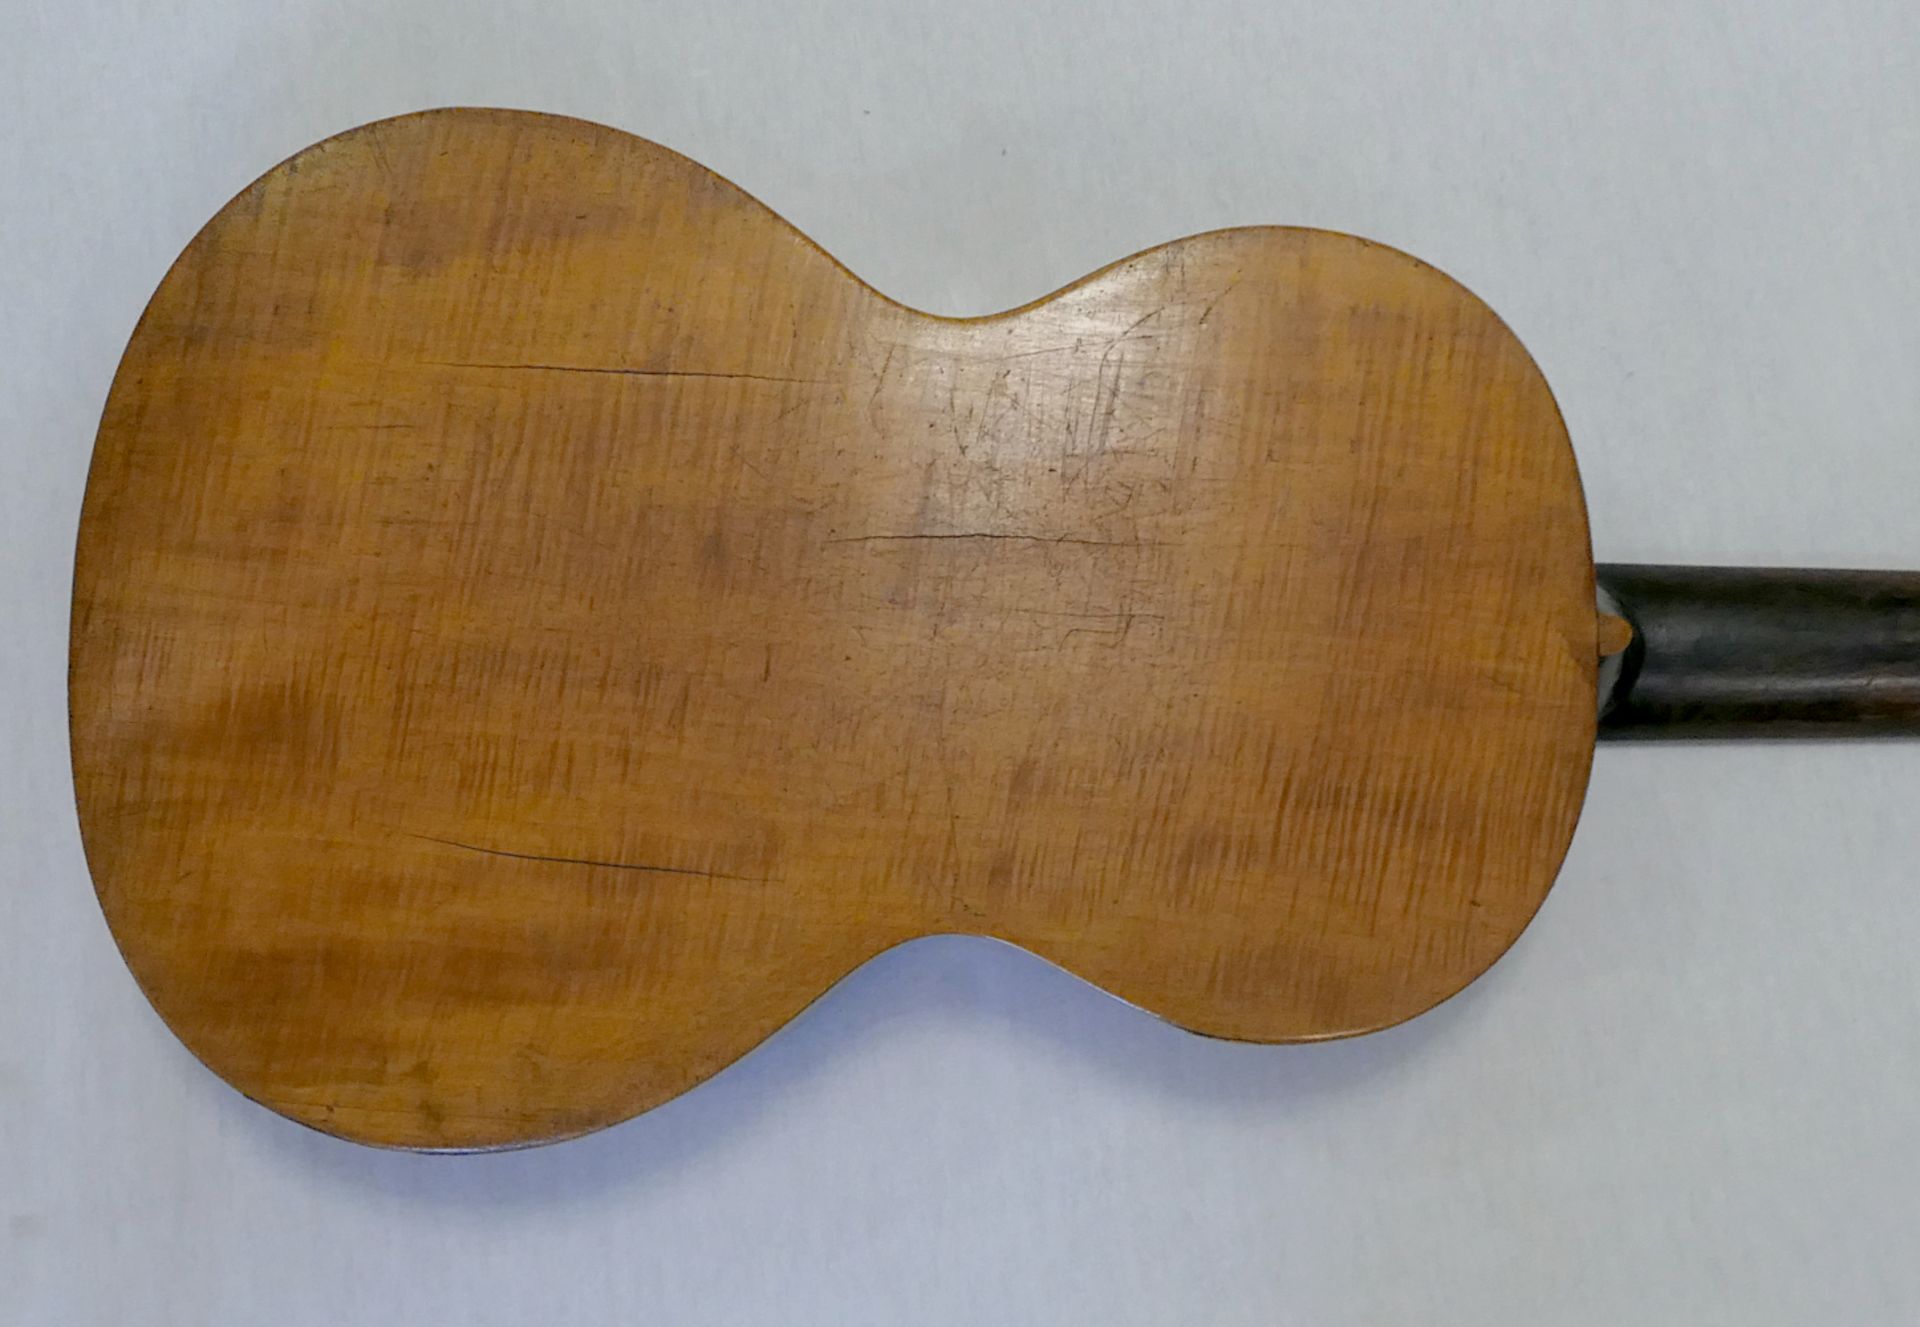 1 Gitarre der Biedermeier-Zeit, inwendig mit Klebezettel "CHs. DEININGER Paris" dat. 1833, ca. L 88c - Bild 2 aus 2